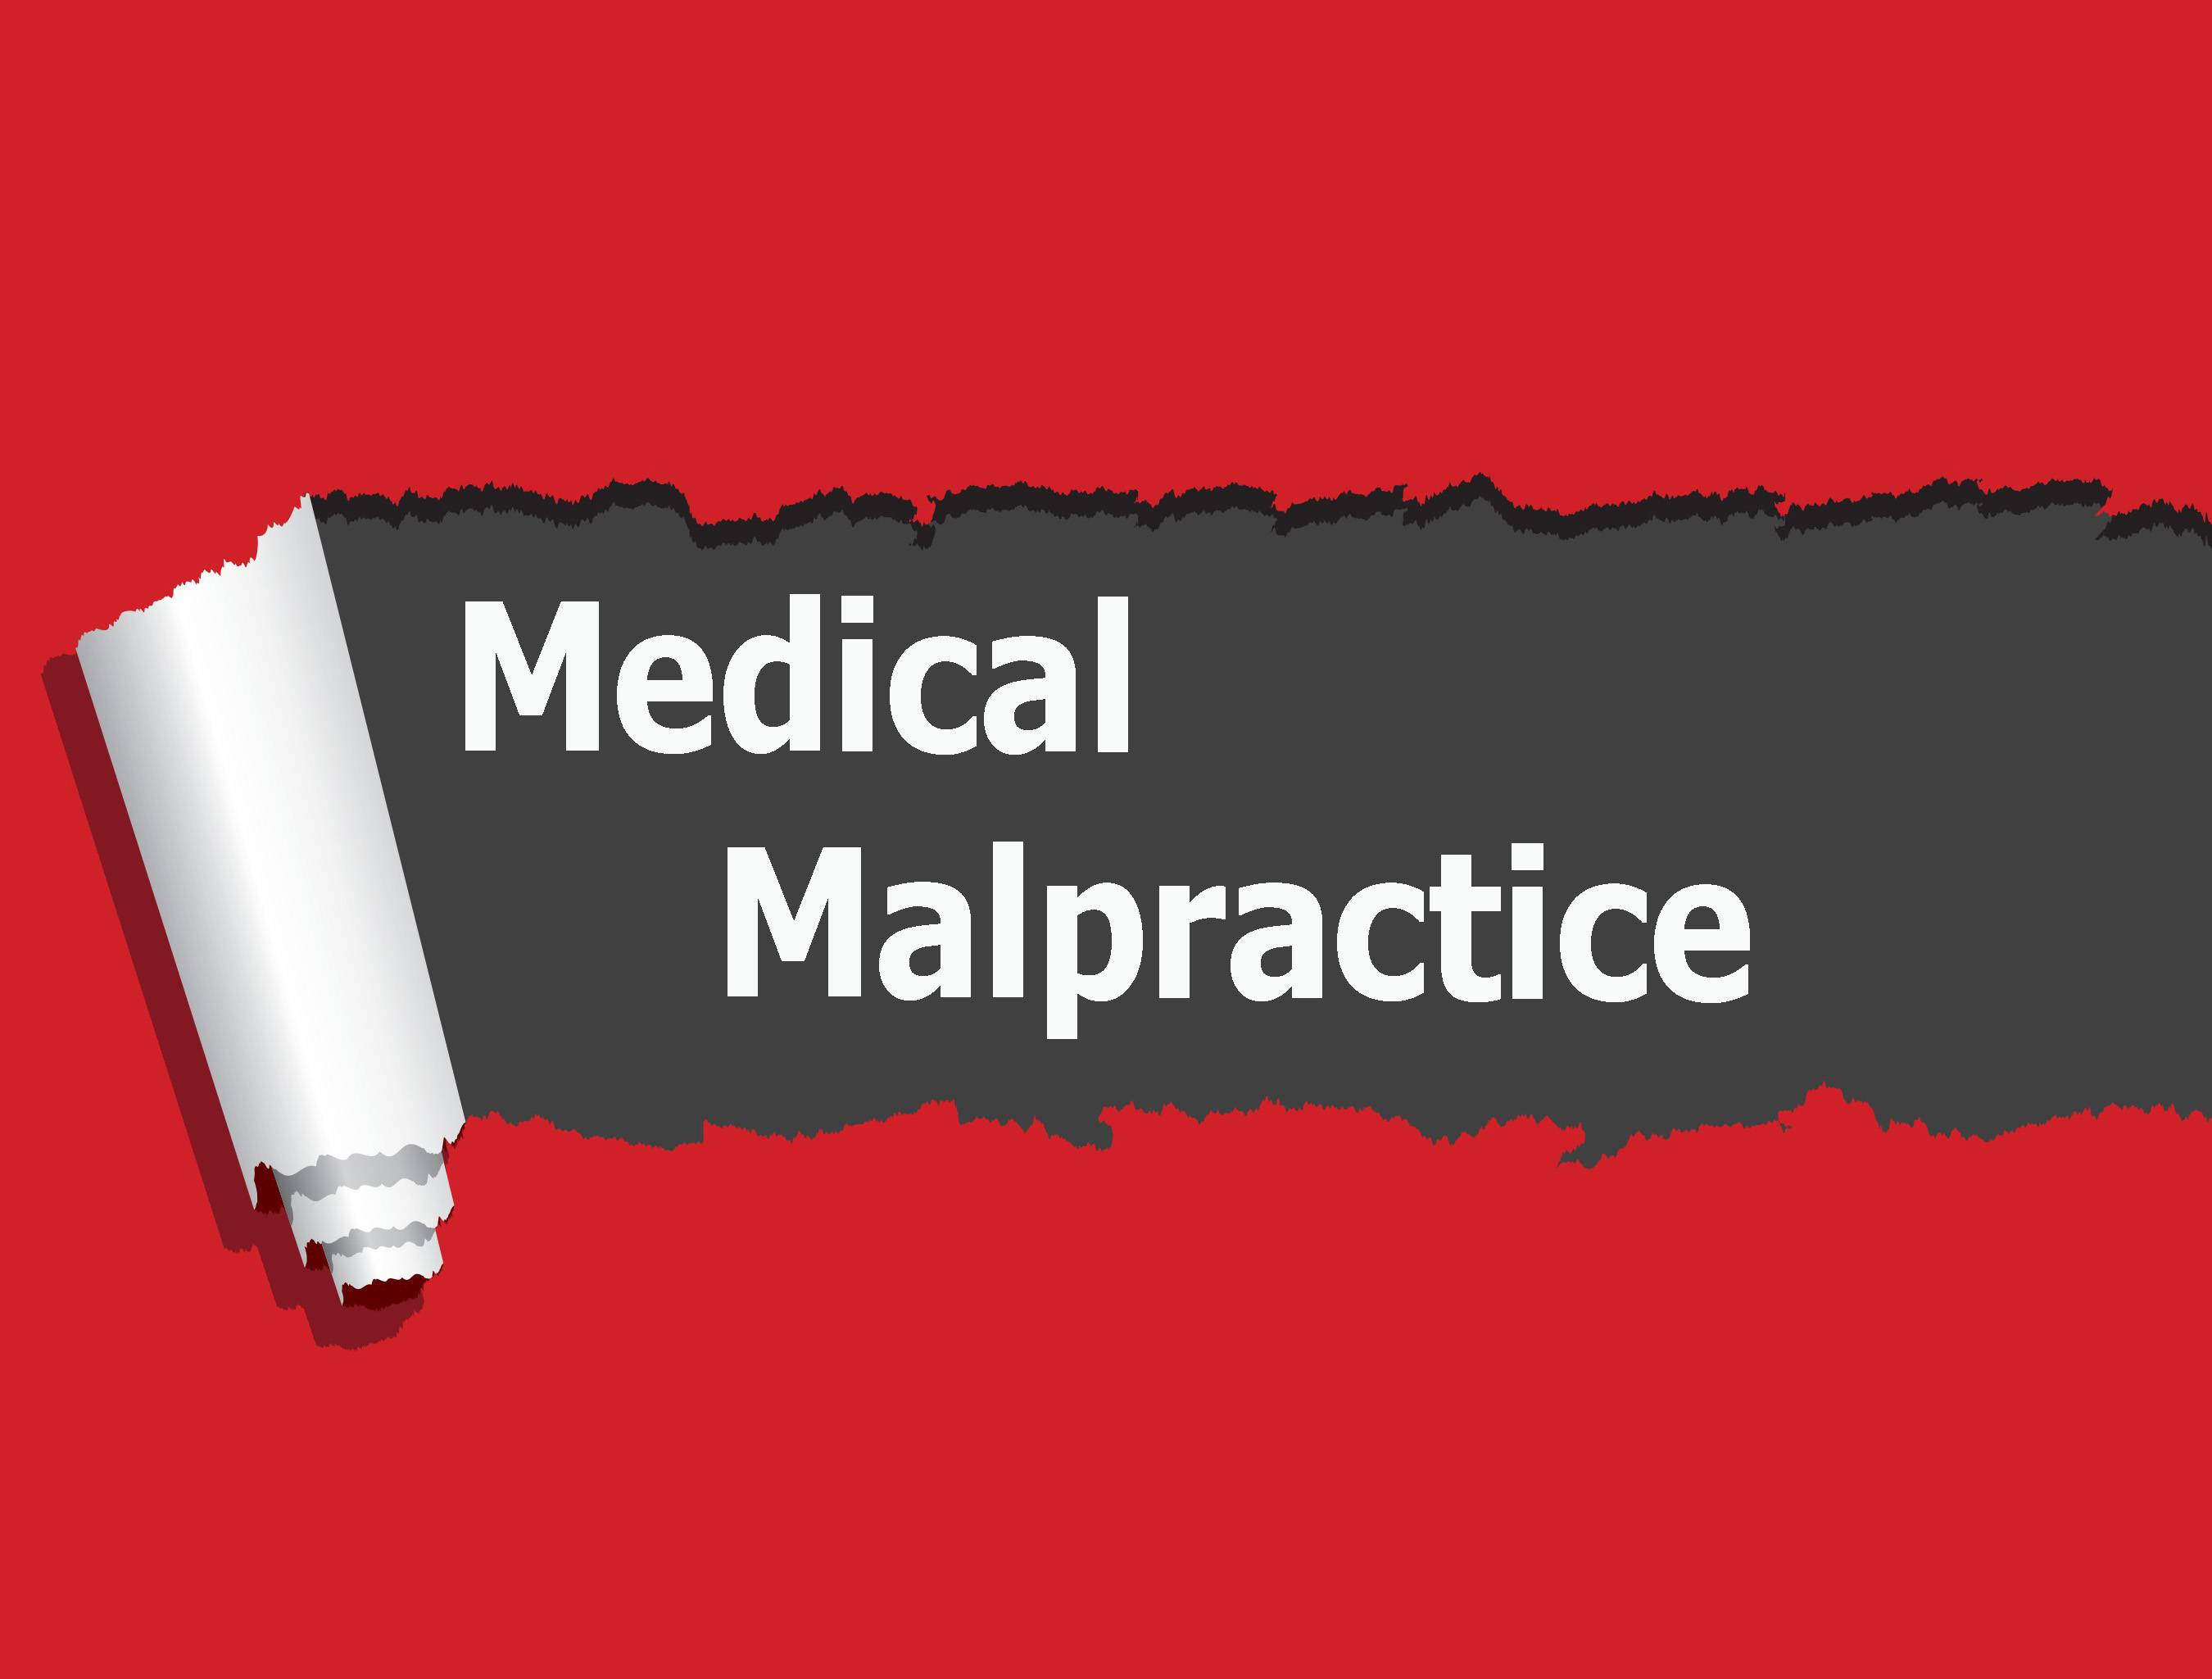 Medical-Malpractice-2.jpg